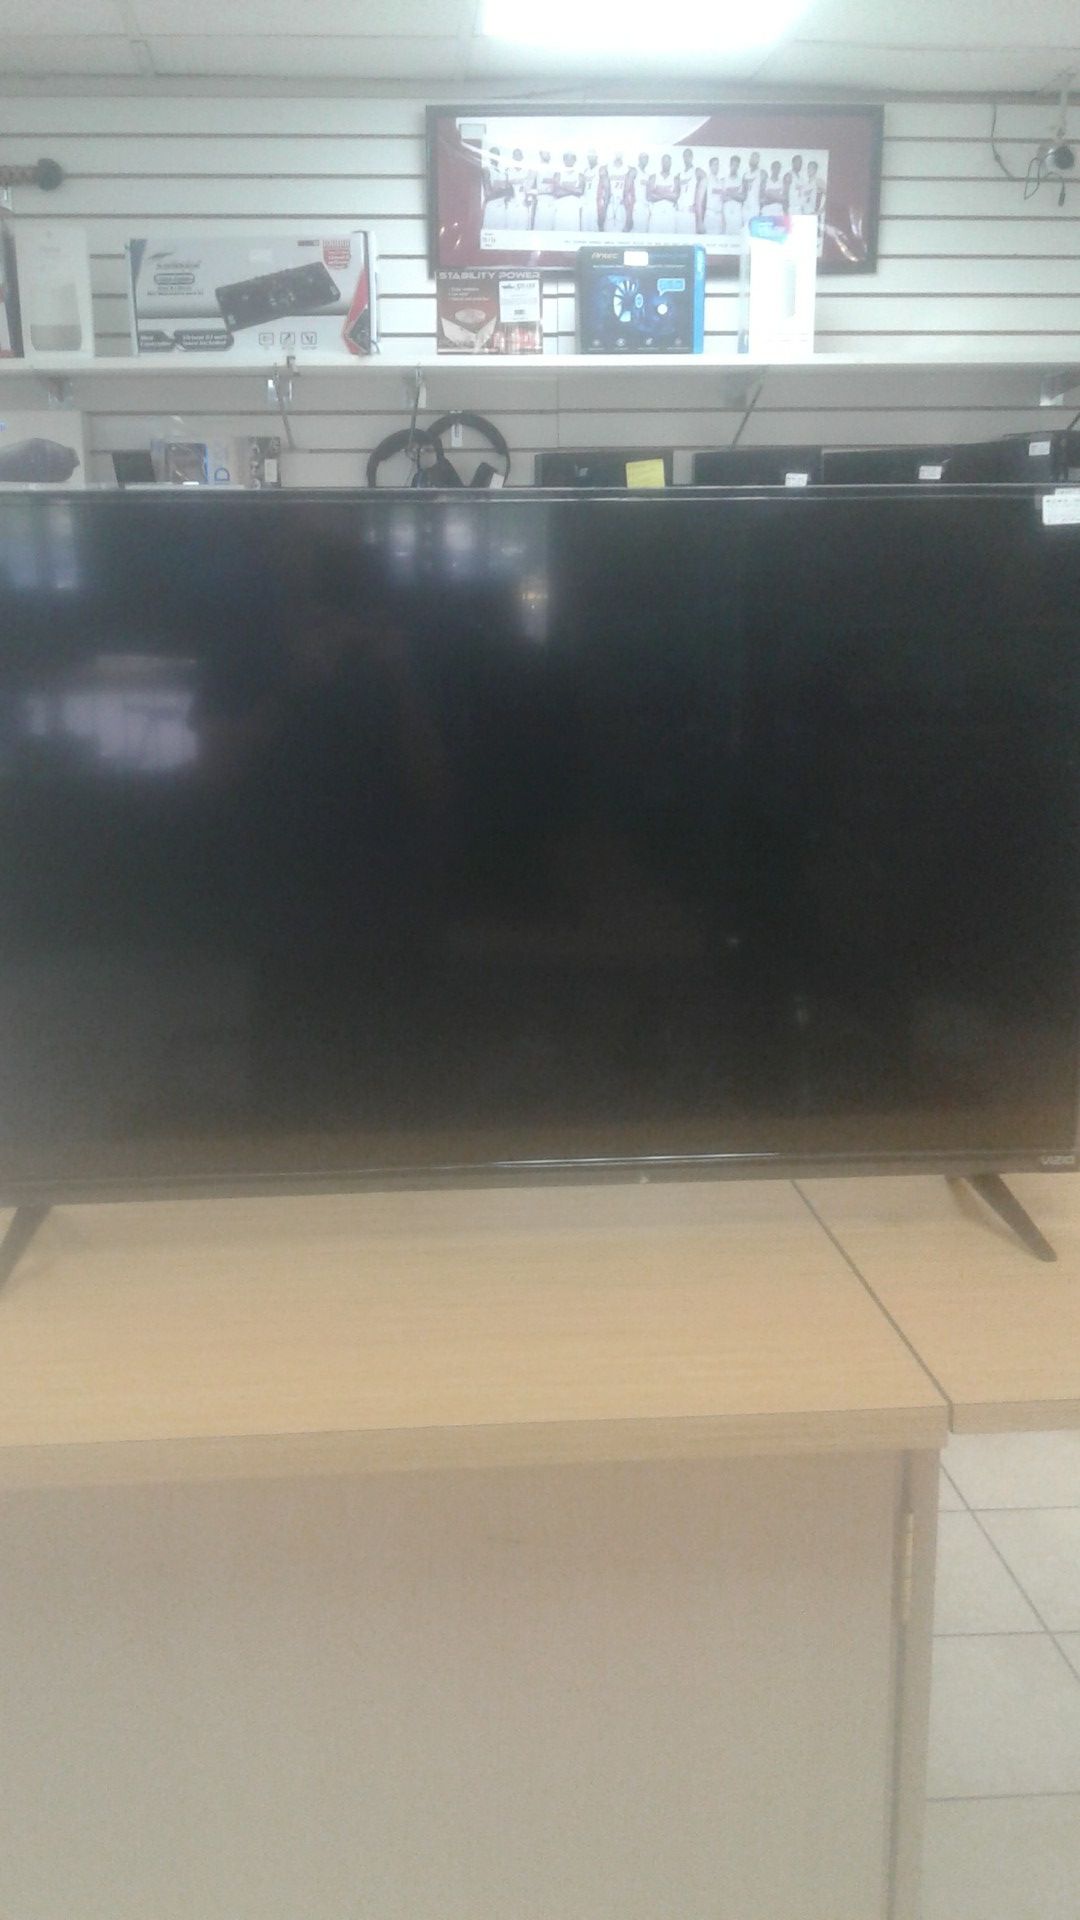 40 inch vizio smart tv